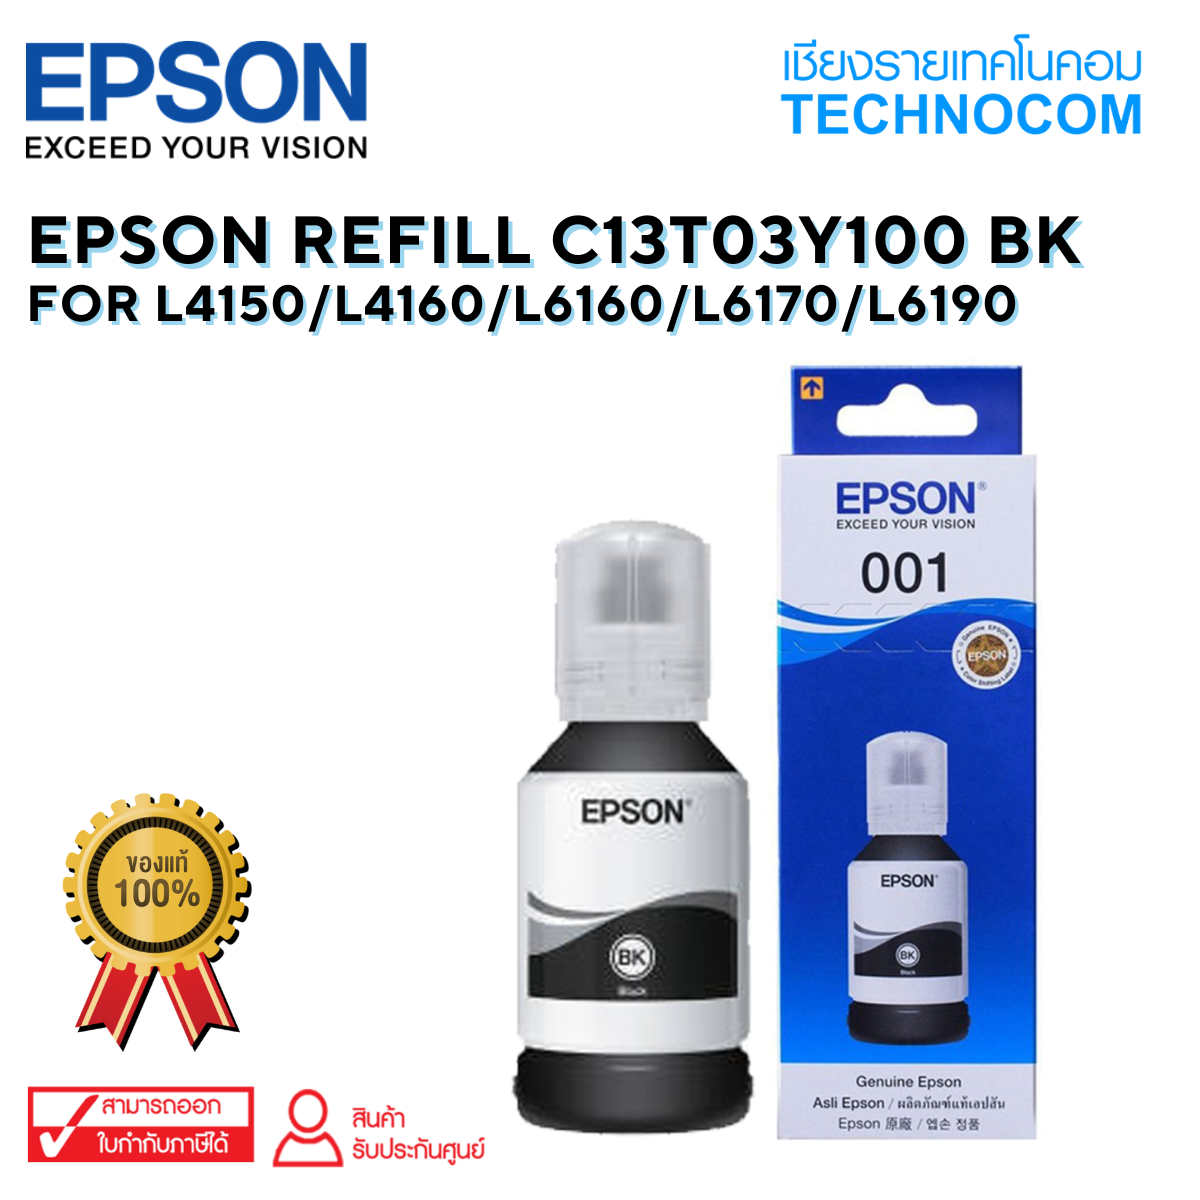 EPSON REFILL C13T03Y100 BK For L4150/L4160/L6160/L6170/L6190